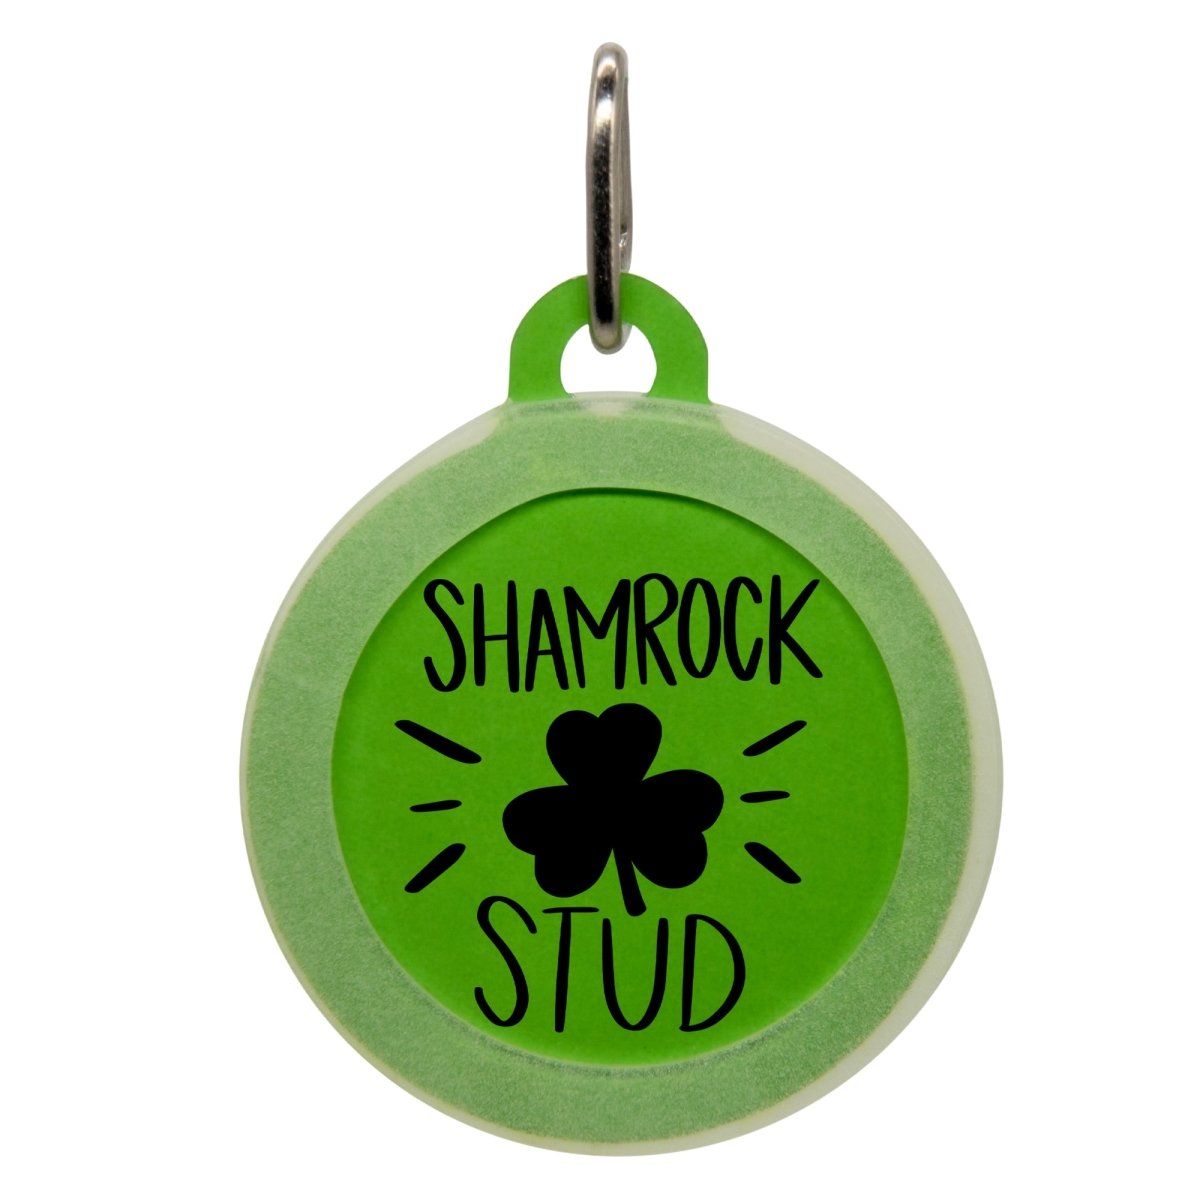 Shamrock Stud Pet ID Tag - Oh My Paw'd